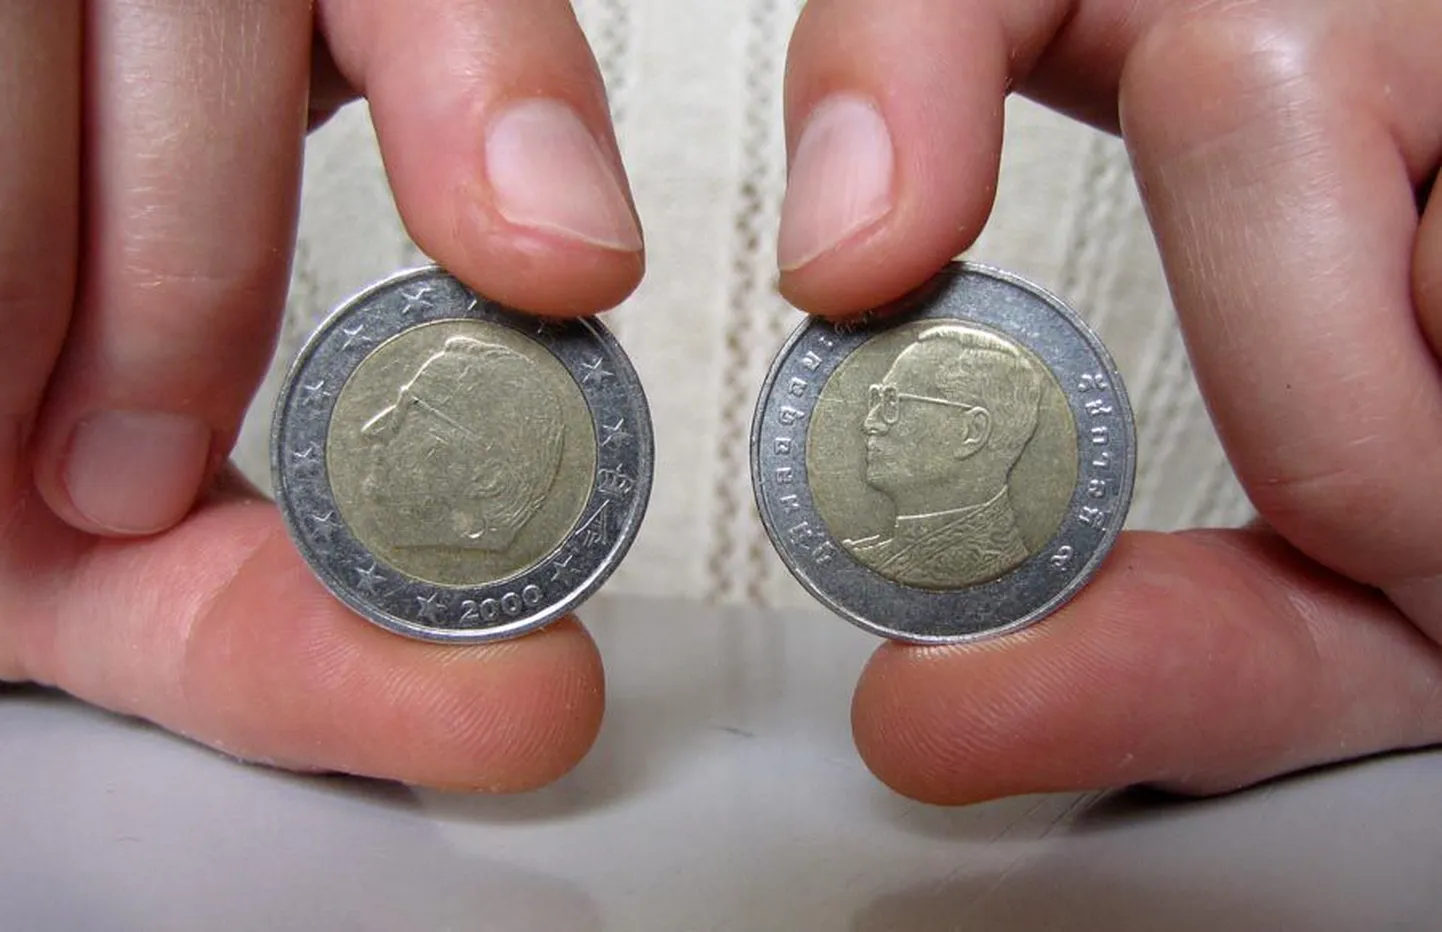 Kumb on kumb? Üks on 2-eurone ja teine 10-bahtine münt.